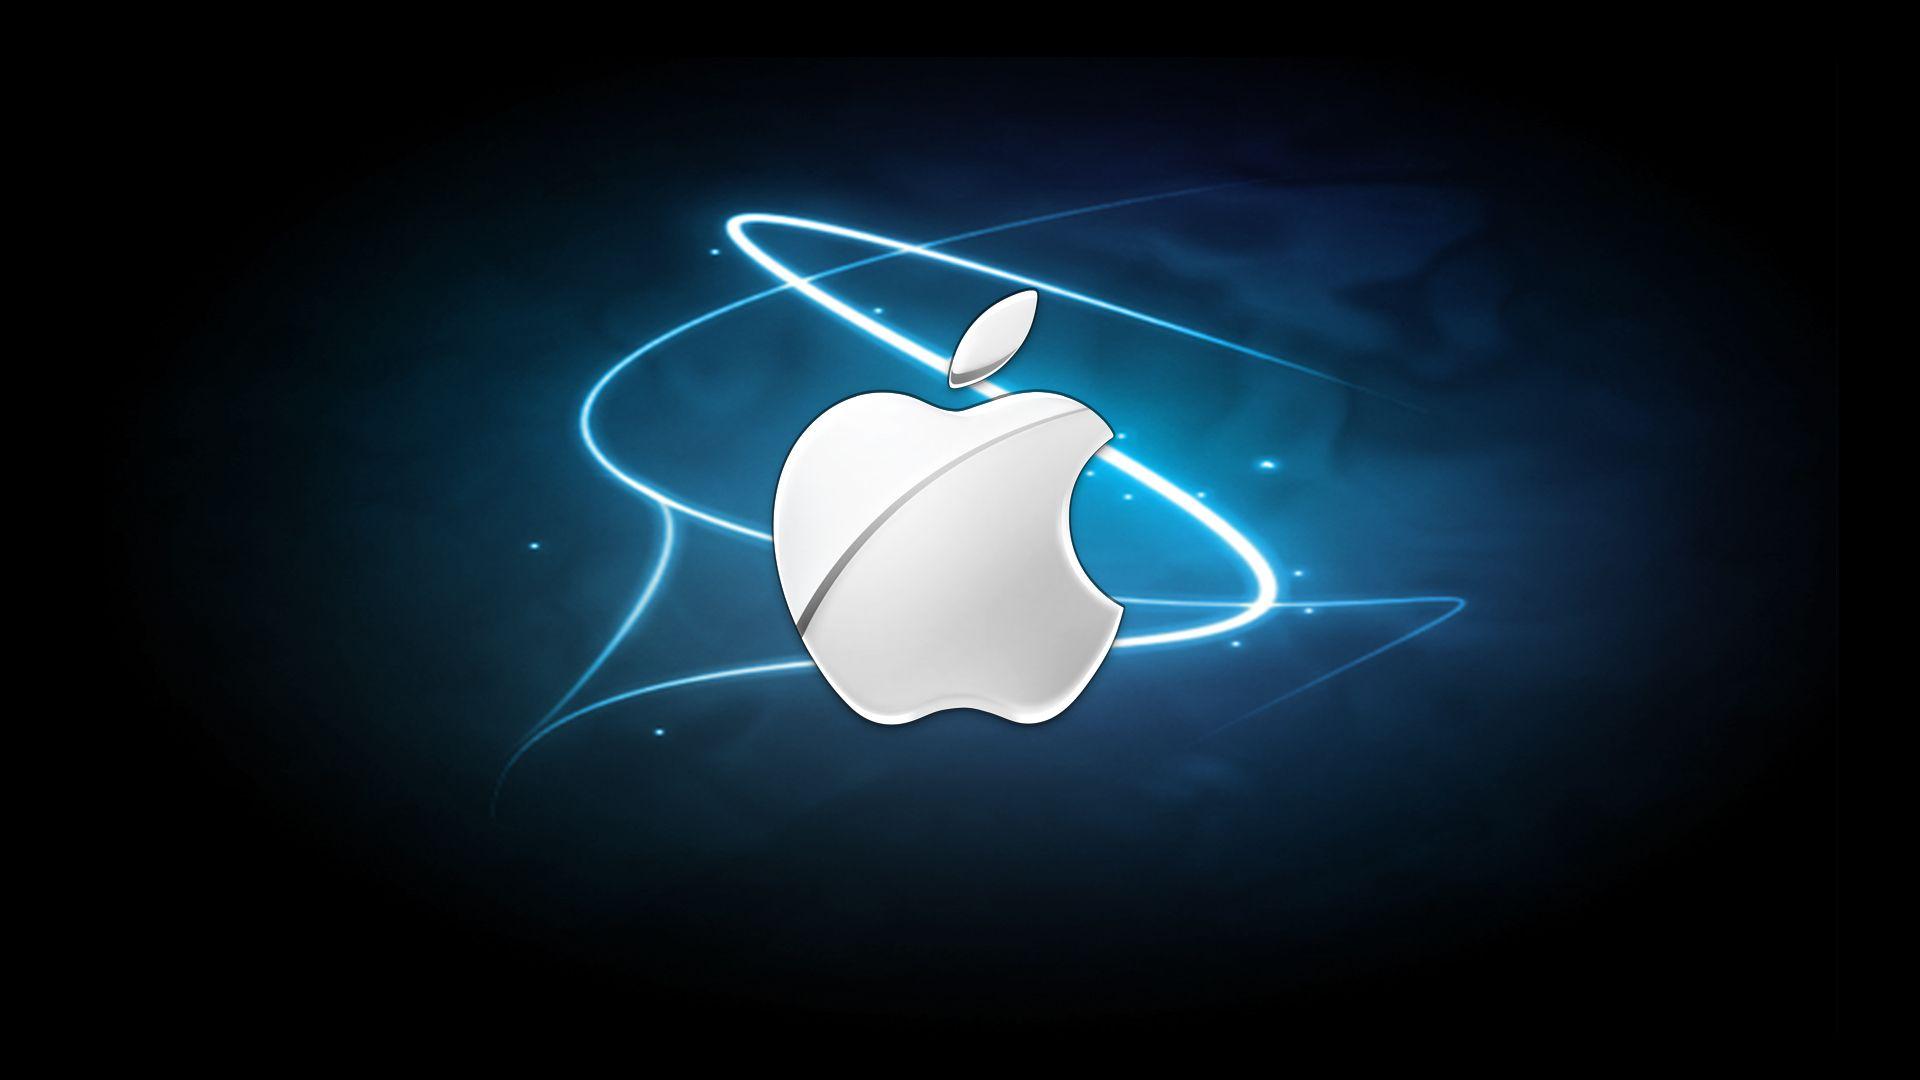 Apple Logo Image Dowload